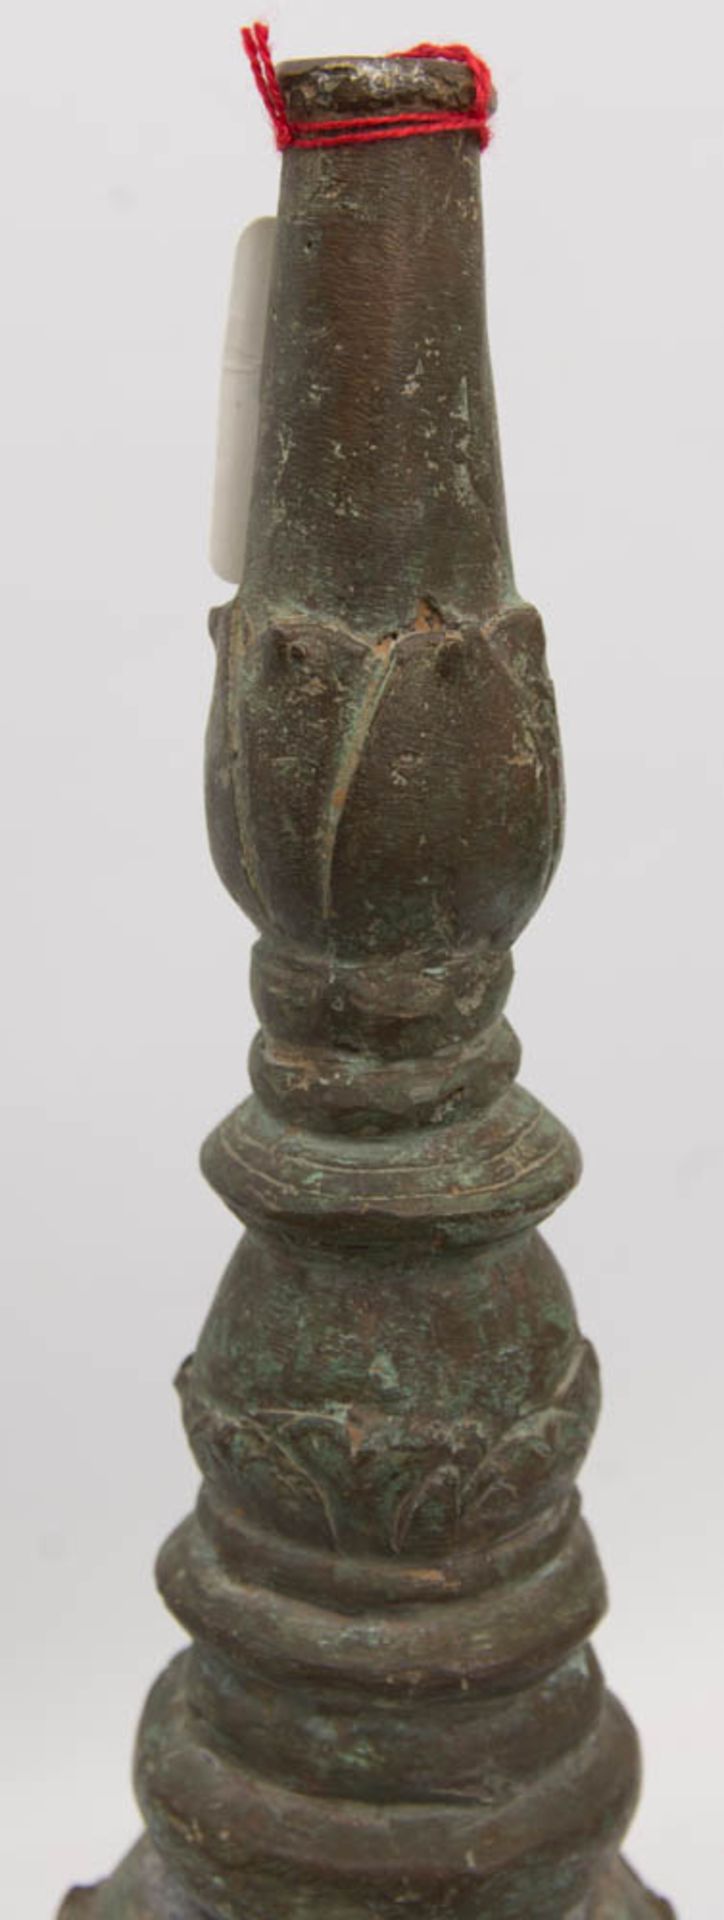 ANTIKES GEFÄß MIT DRACHENKOPF-GRIFF, Bronze, wohl China, 18./19. Jh.Antikes Gefäß, Griff und - Bild 2 aus 16